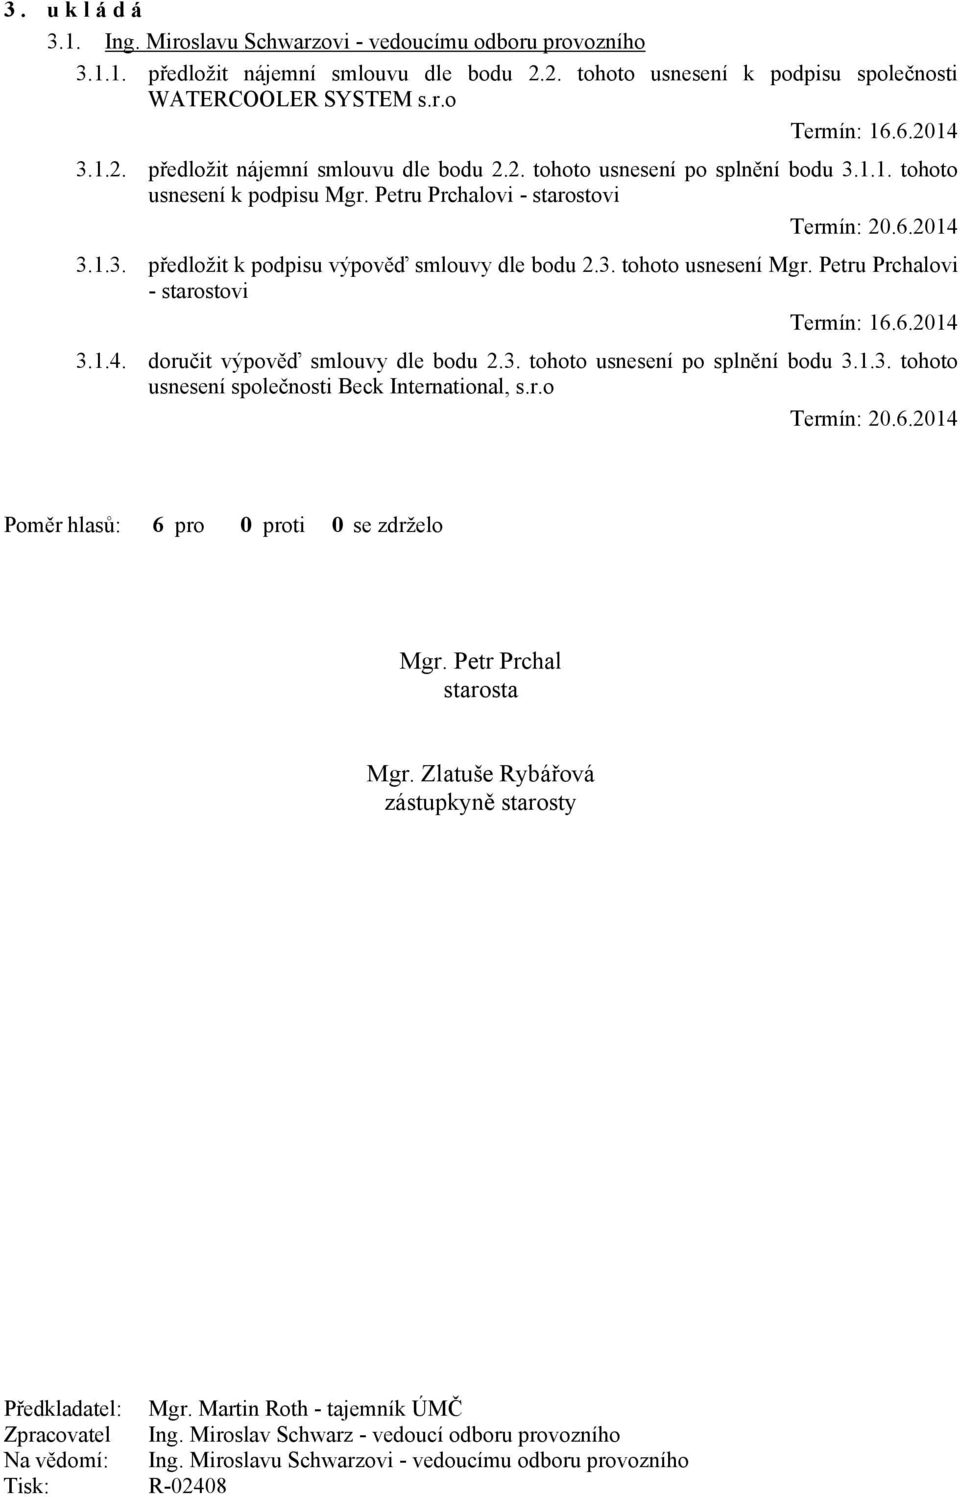 3. tohoto usnesení Mgr. Petru Prchalovi - starostovi Termín: 16.6.2014 3.1.4. doručit výpověď smlouvy dle bodu 2.3. tohoto usnesení po splnění bodu 3.1.3. tohoto usnesení společnosti Beck International, s.